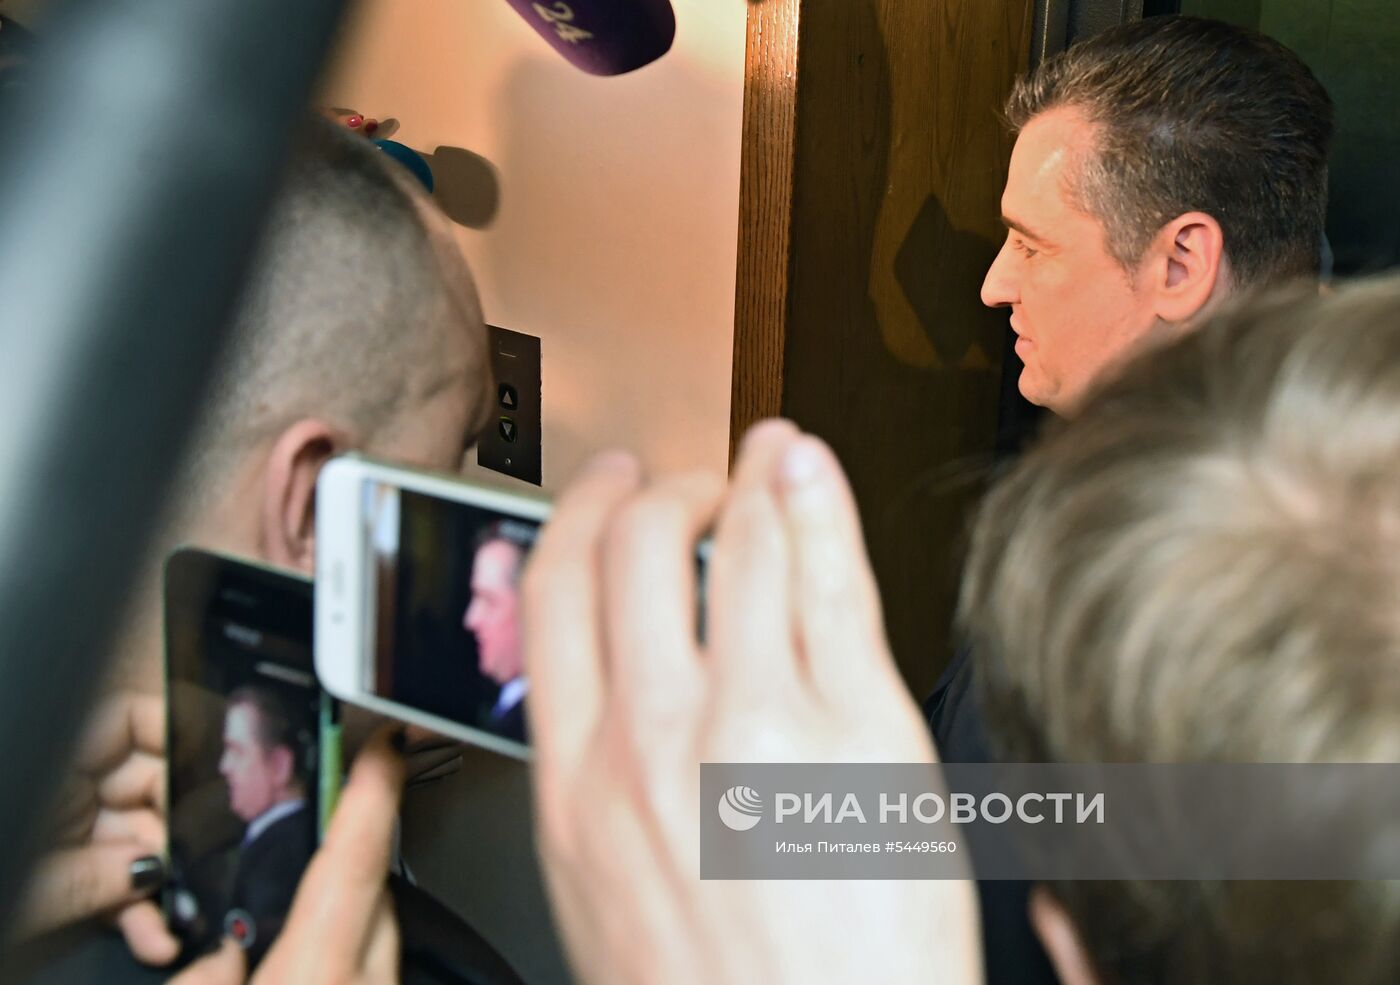 Комиссия Государственной Думы РФ по этике рассмотрела жалобу журналисток на Л. Слуцкого